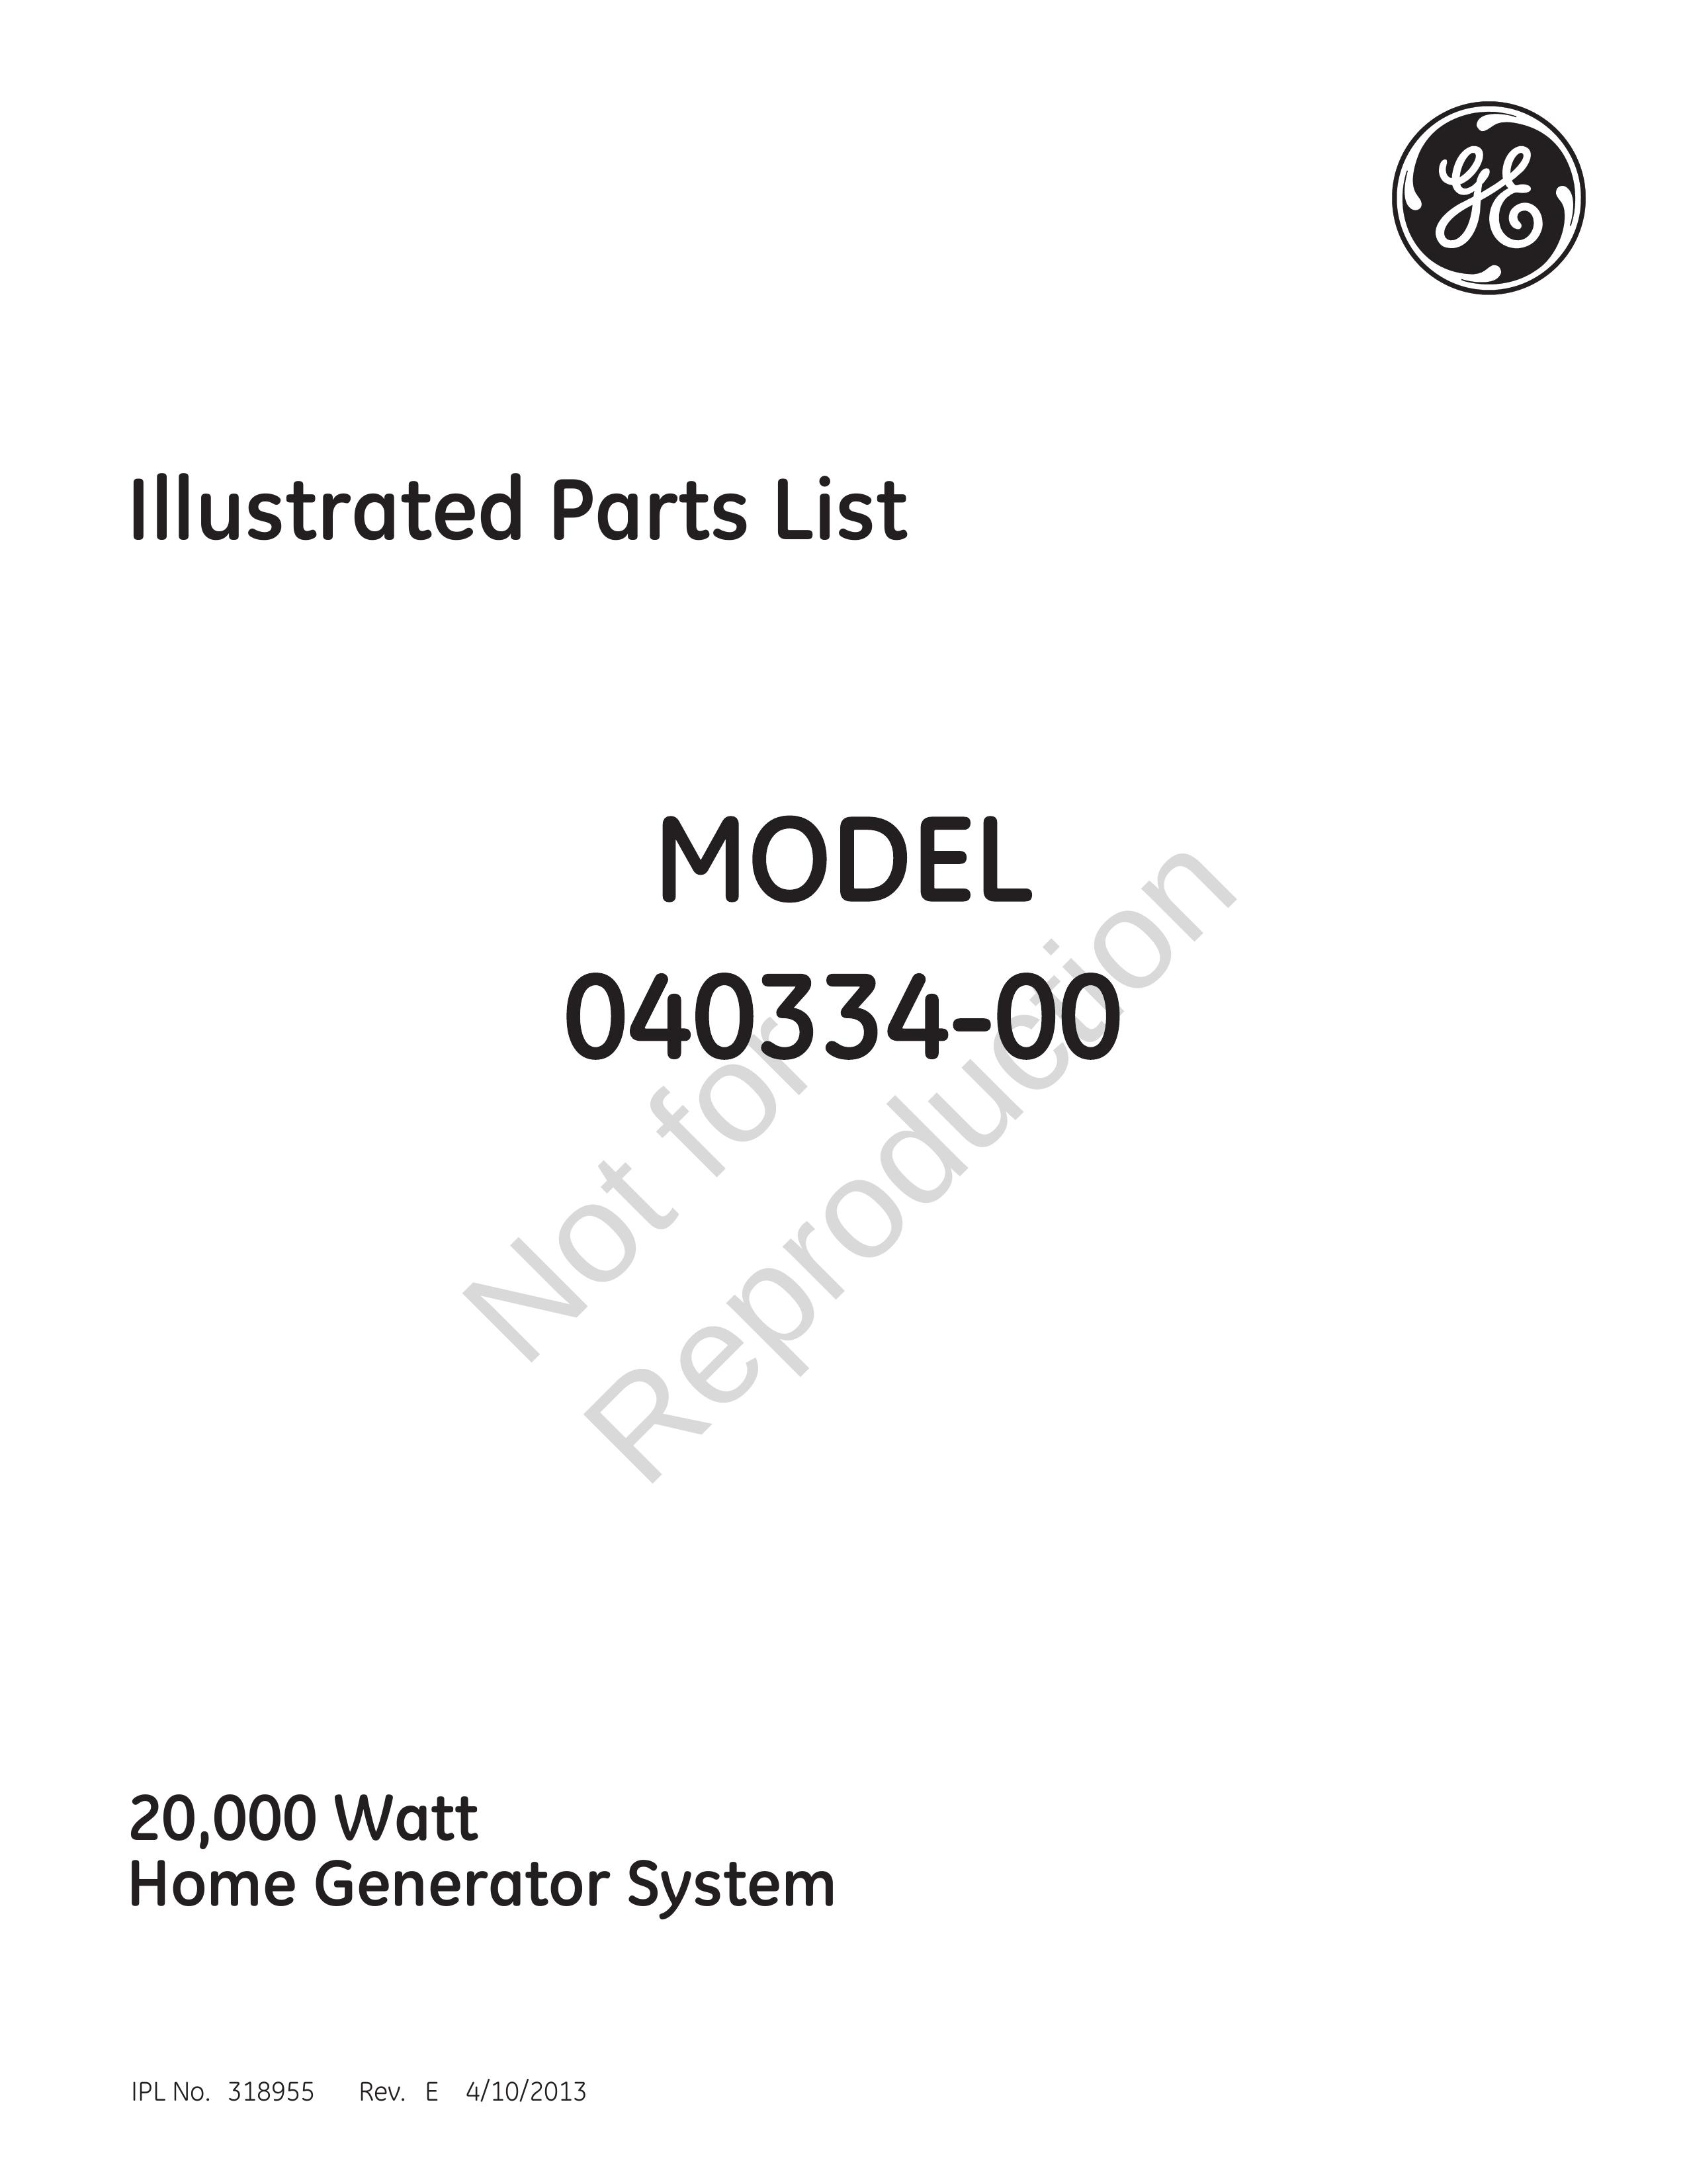 GE 040334-00 20 Portable Generator User Manual